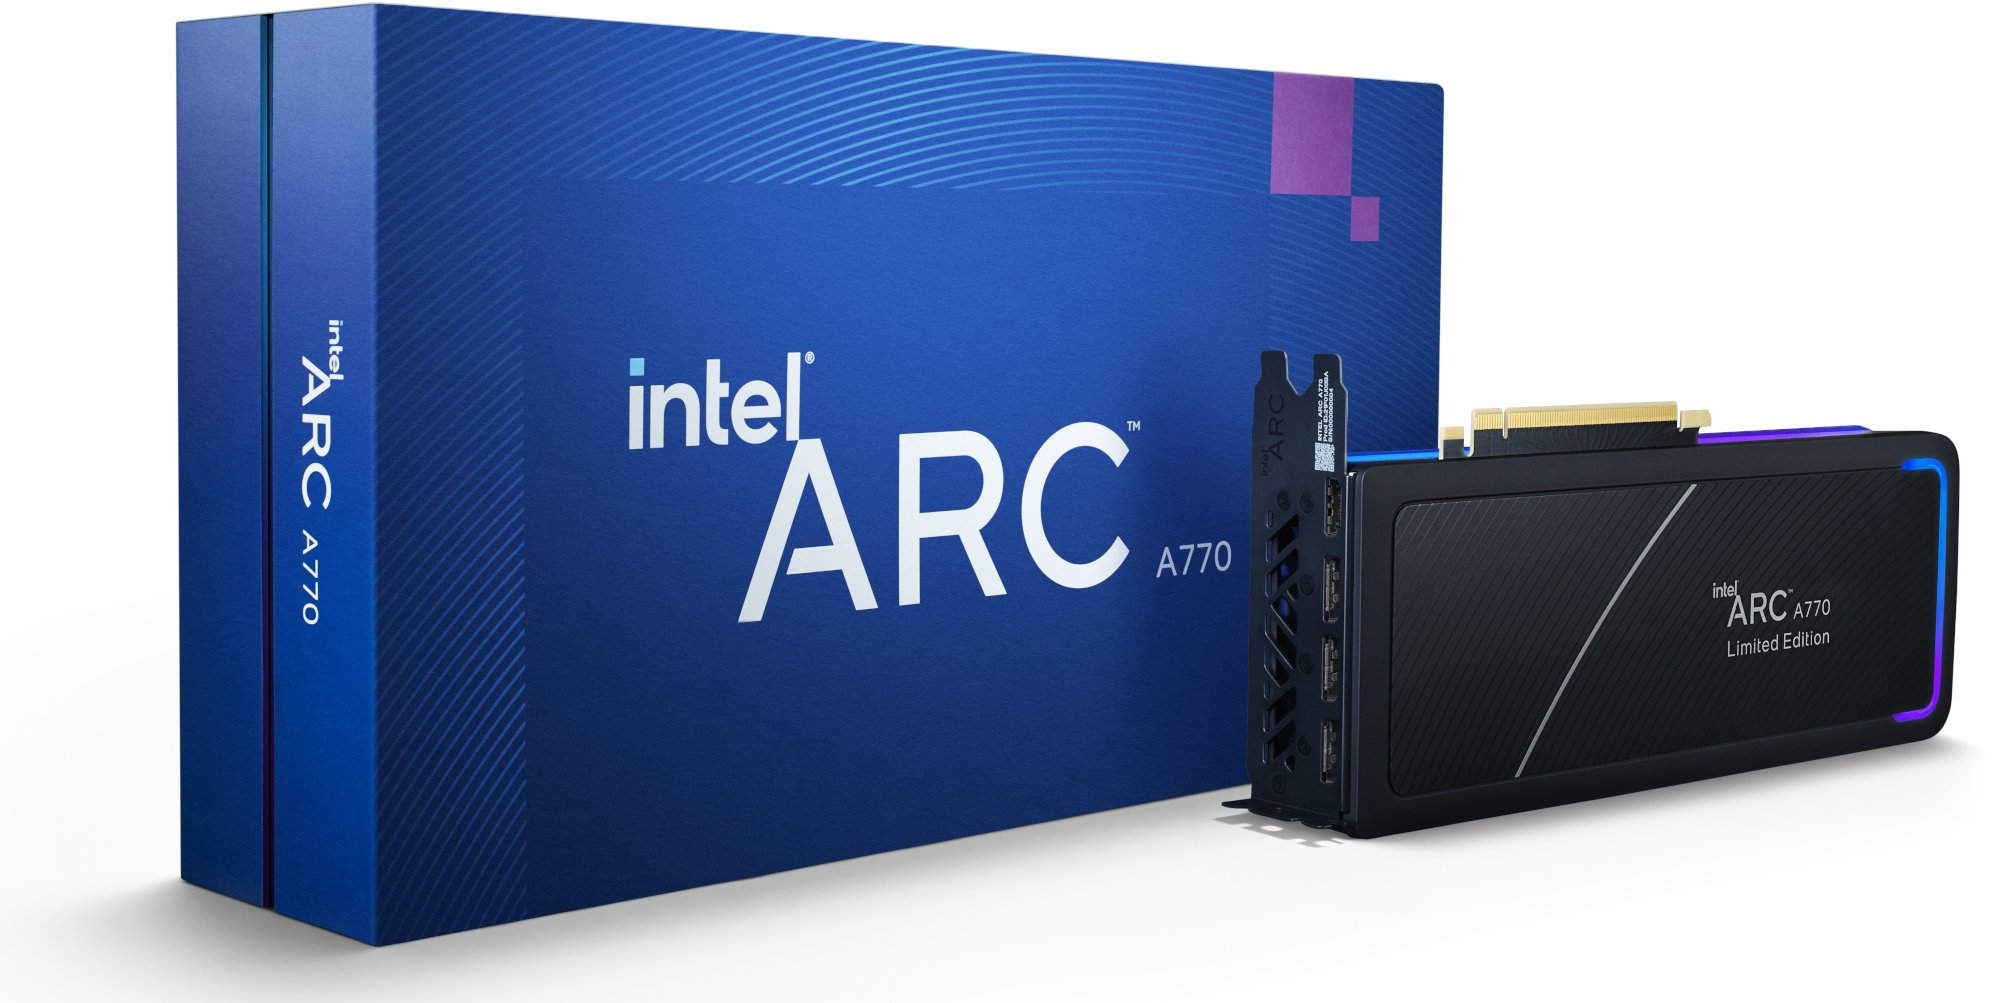 Intel ARC A770 16GB Limited Edition